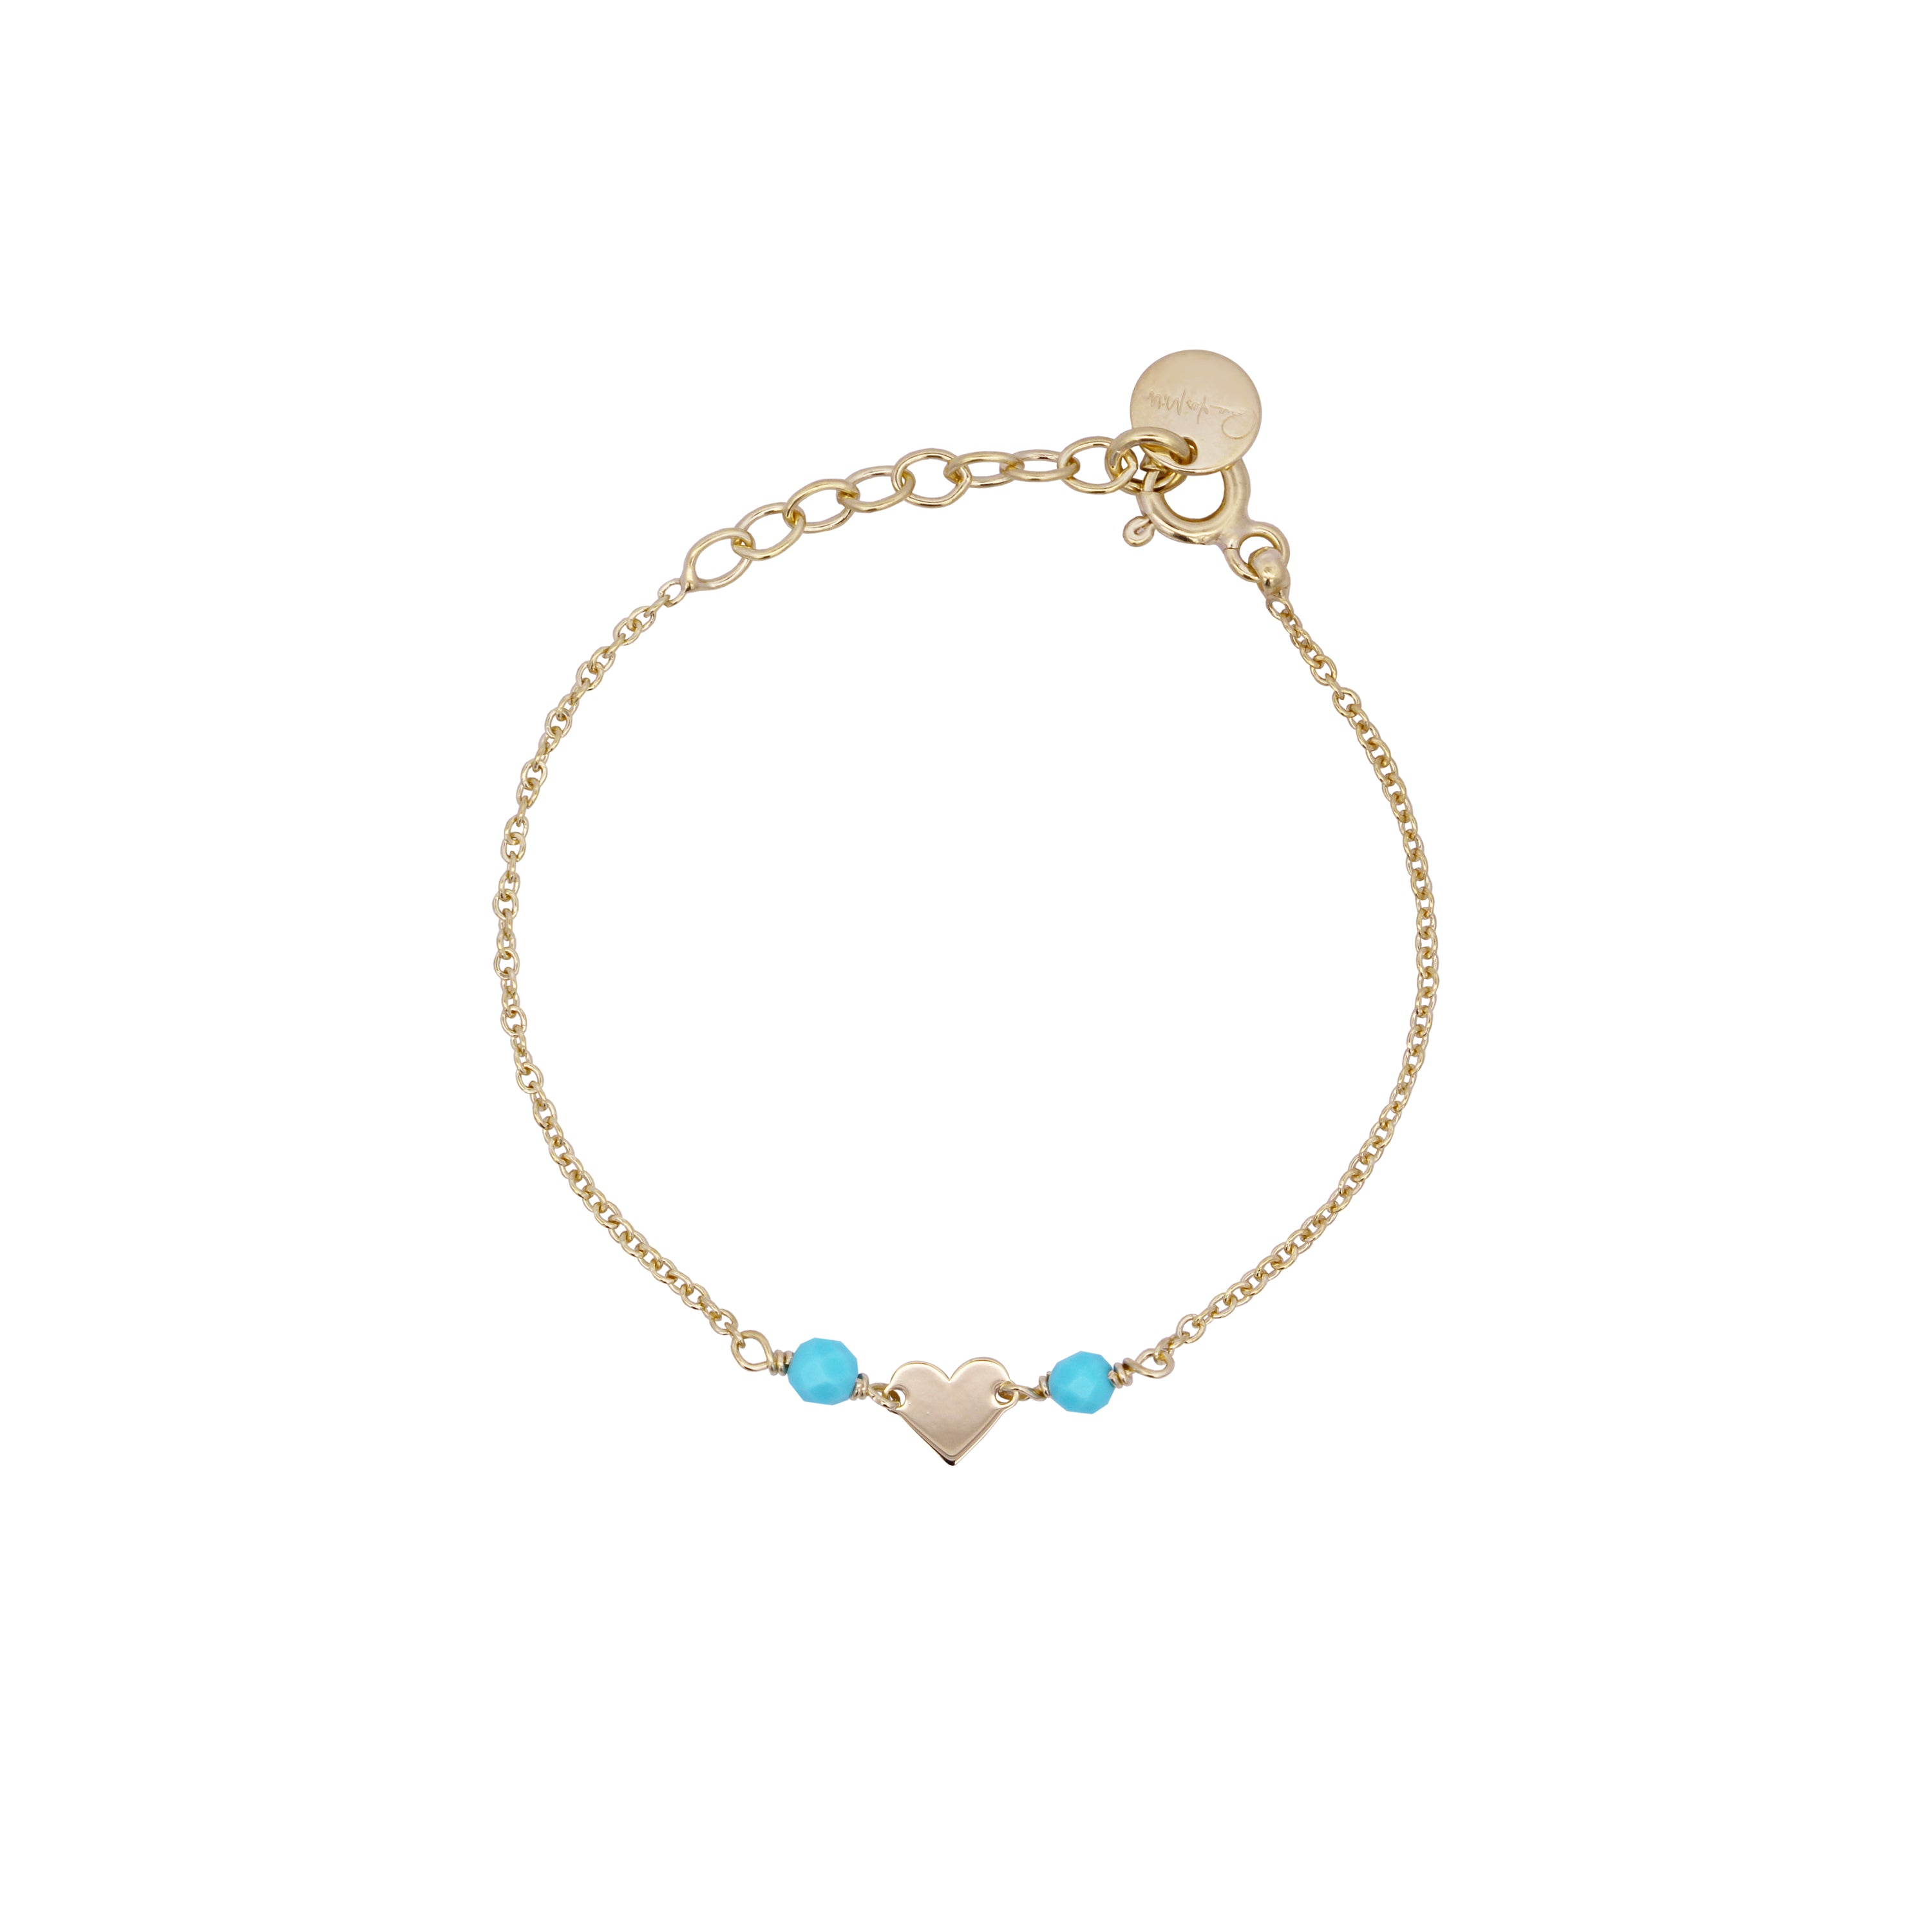 Bracelets - Heart chain bracelet Turquoise Stones Child - Io&Ro - 1 | Rue des Mille